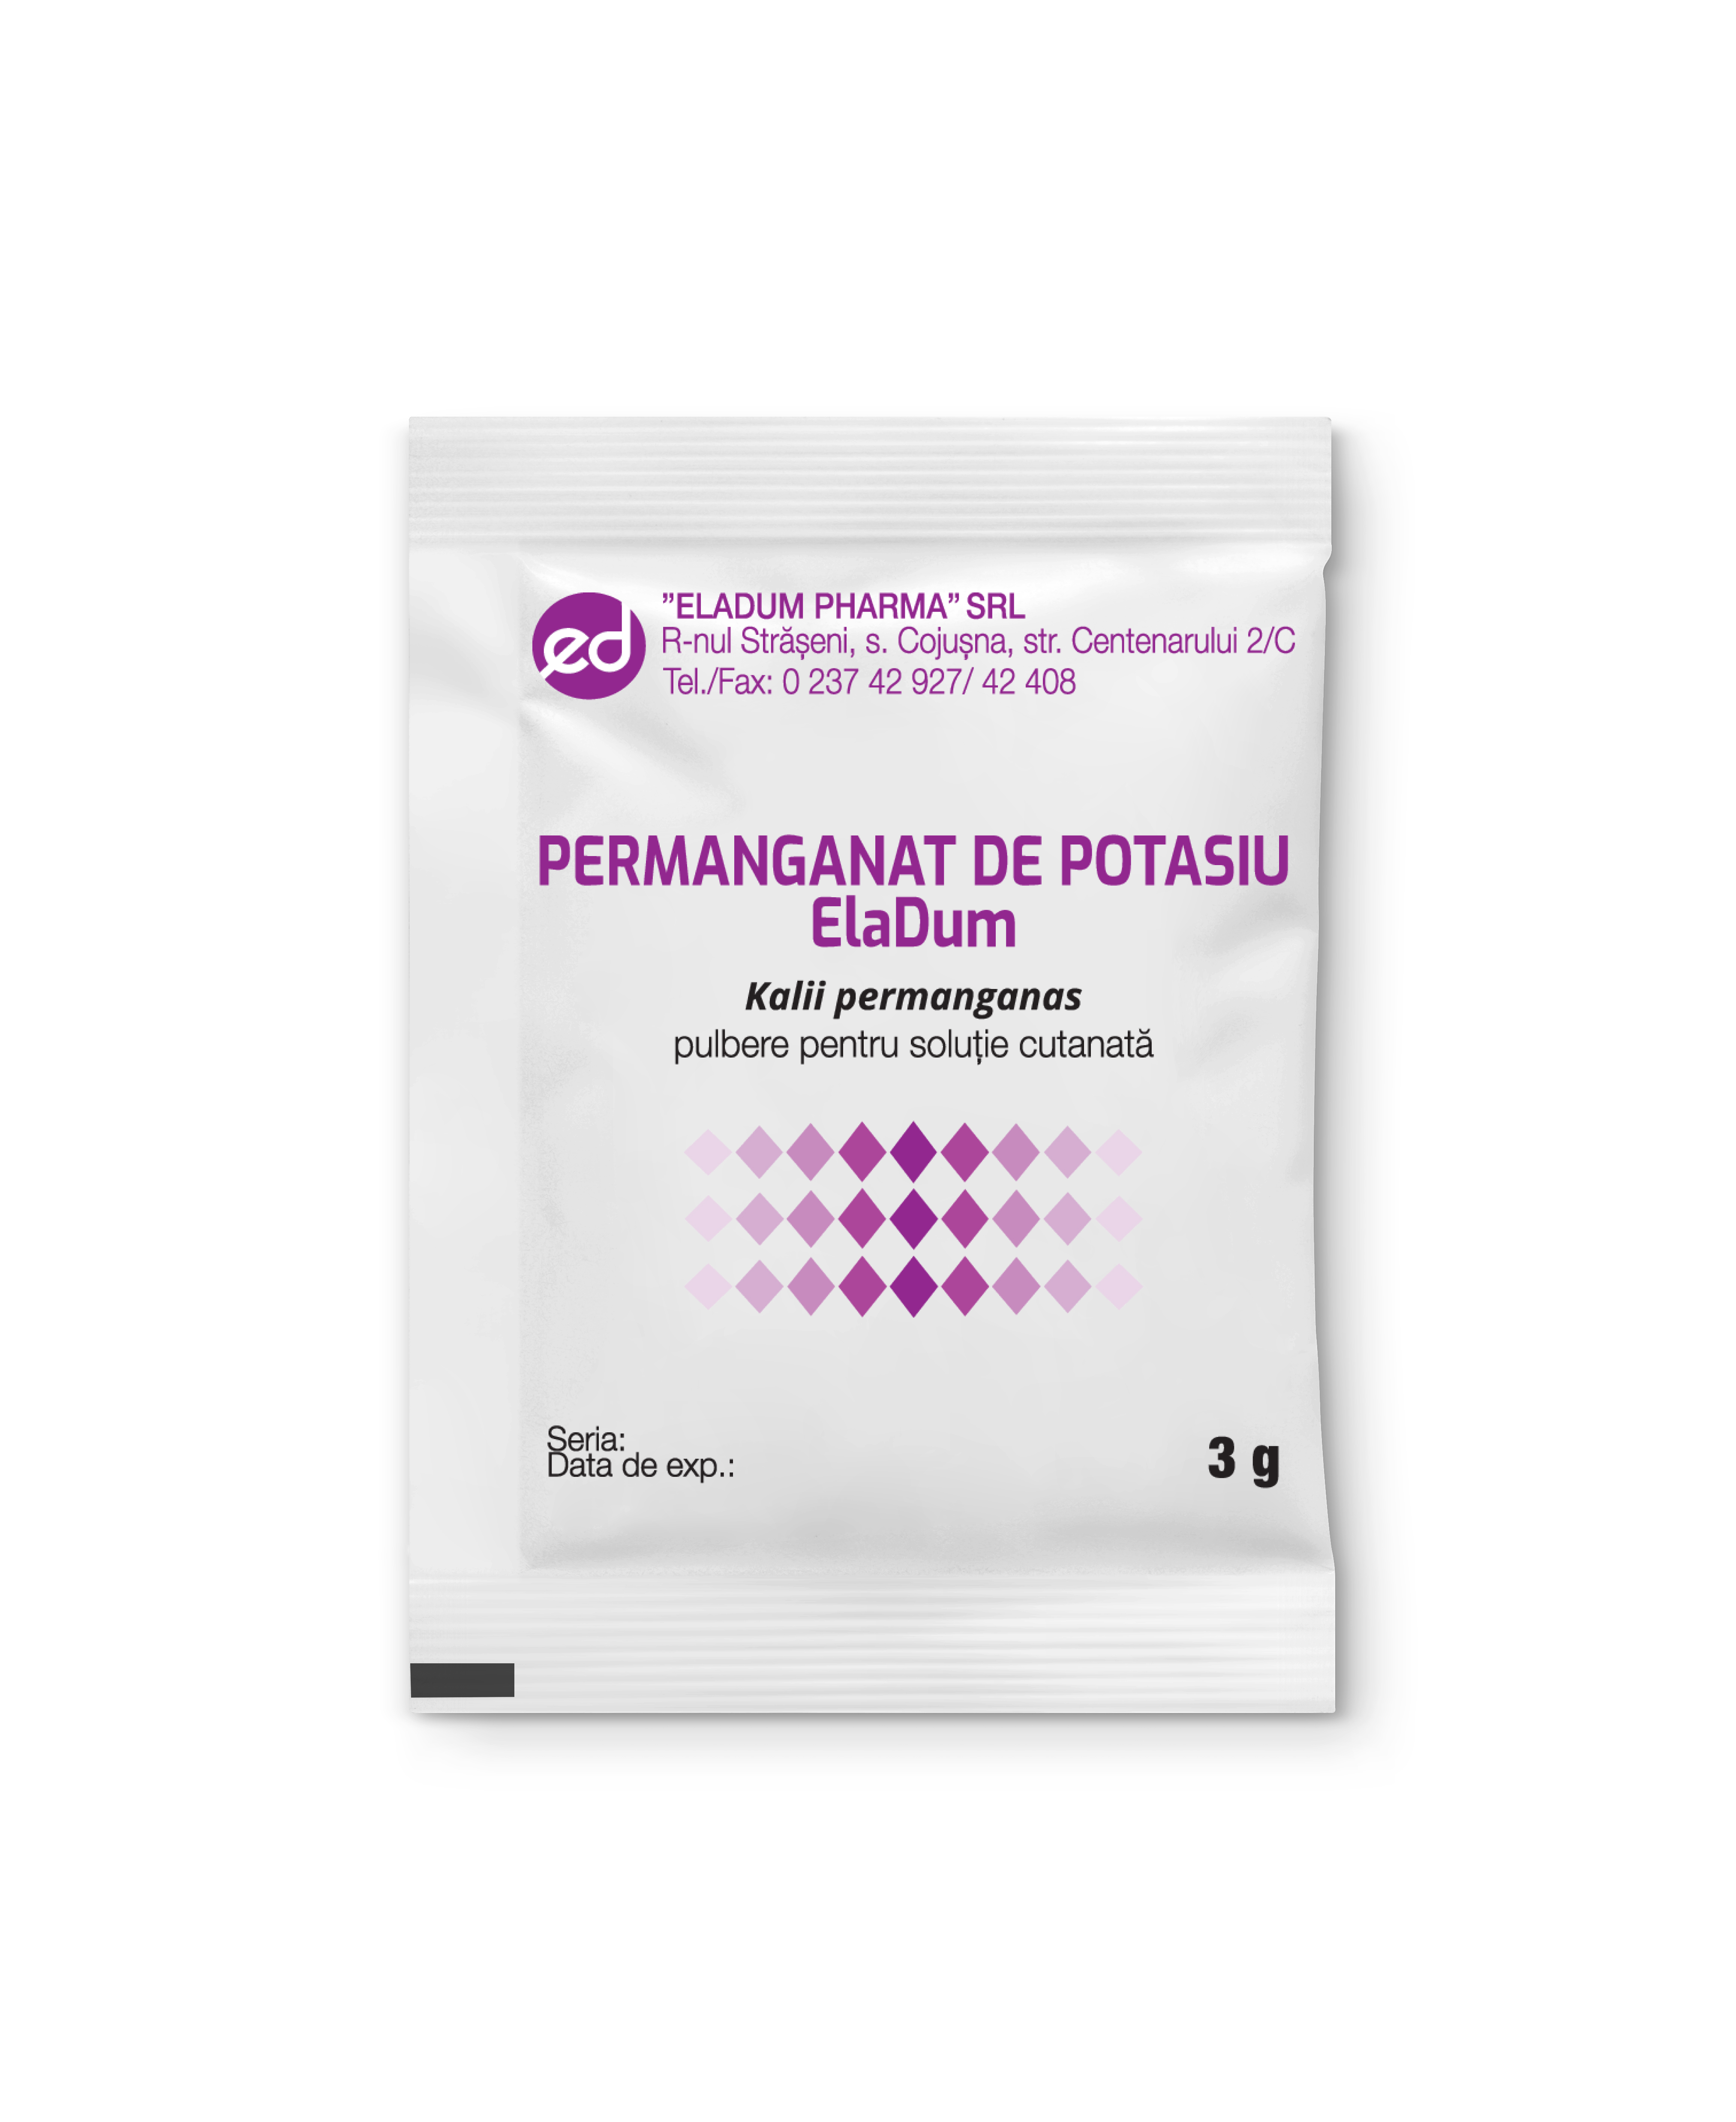 Potassium permanganate - ElaDum - ElaDum Pharma